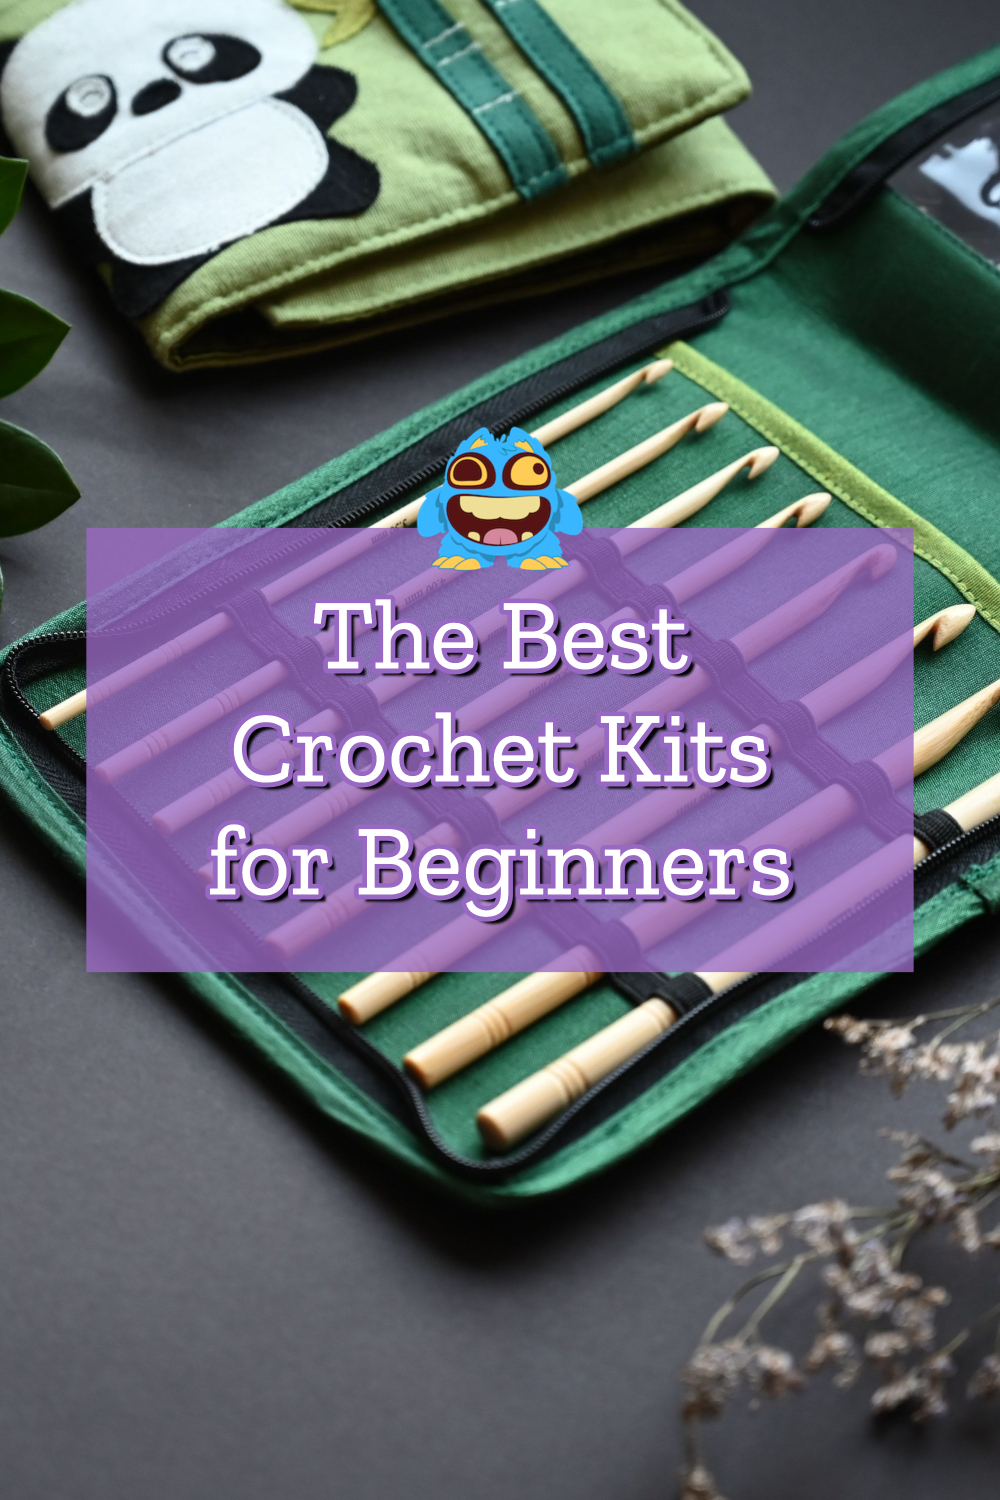 The 9 Best Crochet Kits for Beginners